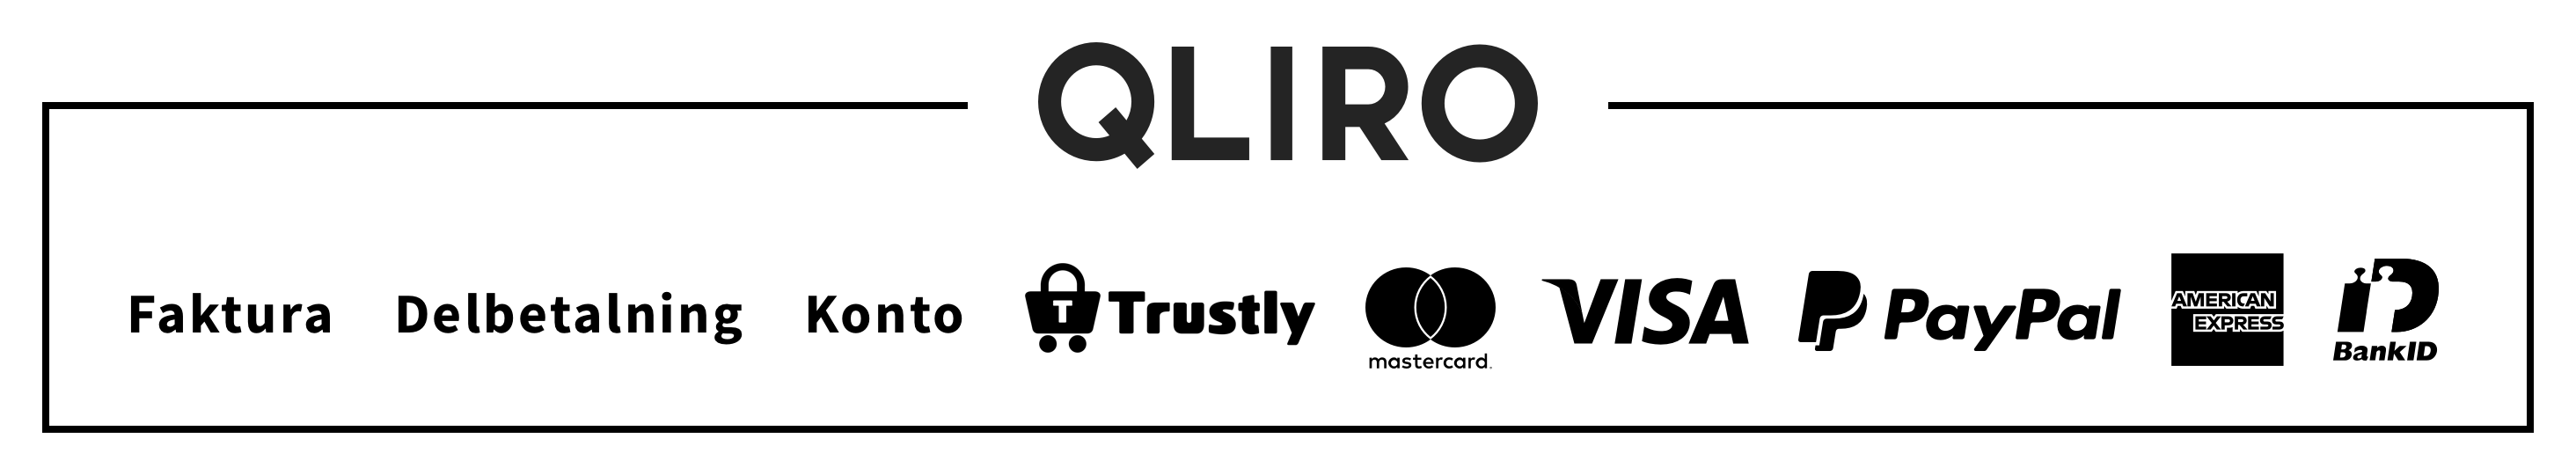 Qliro payments